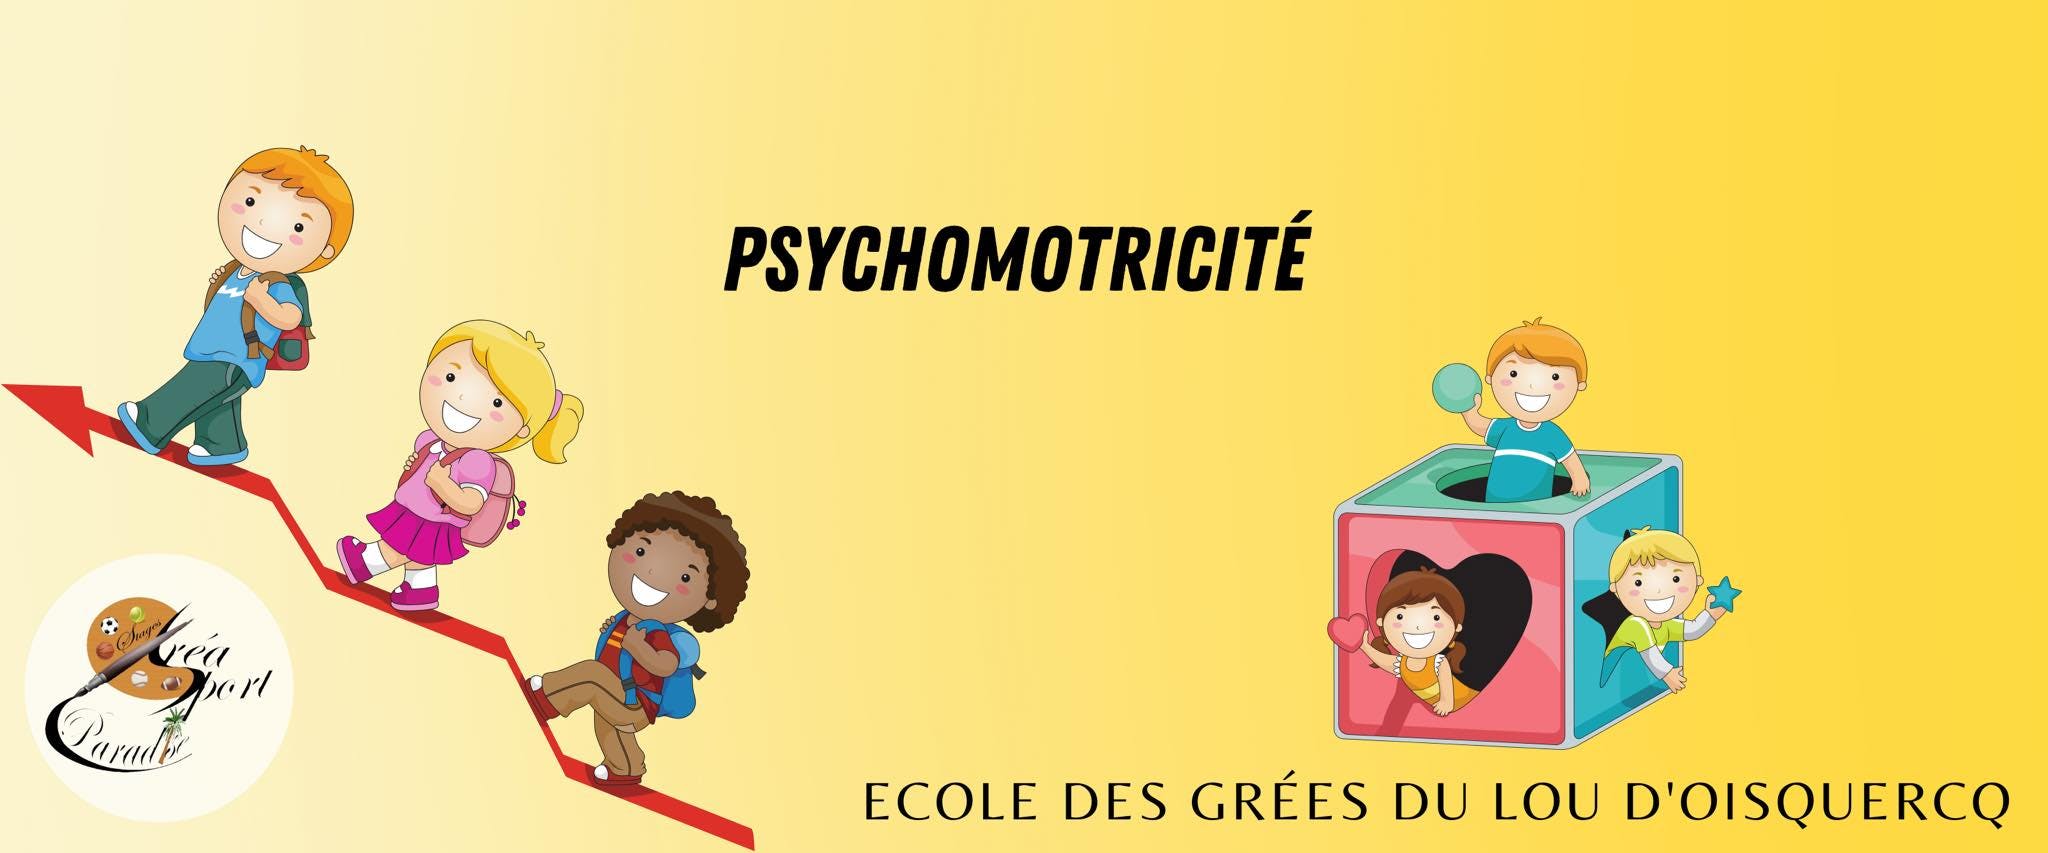 Parascolaires Ecole de Oisquercq - 15h20 LUNDI- Psychomotricité